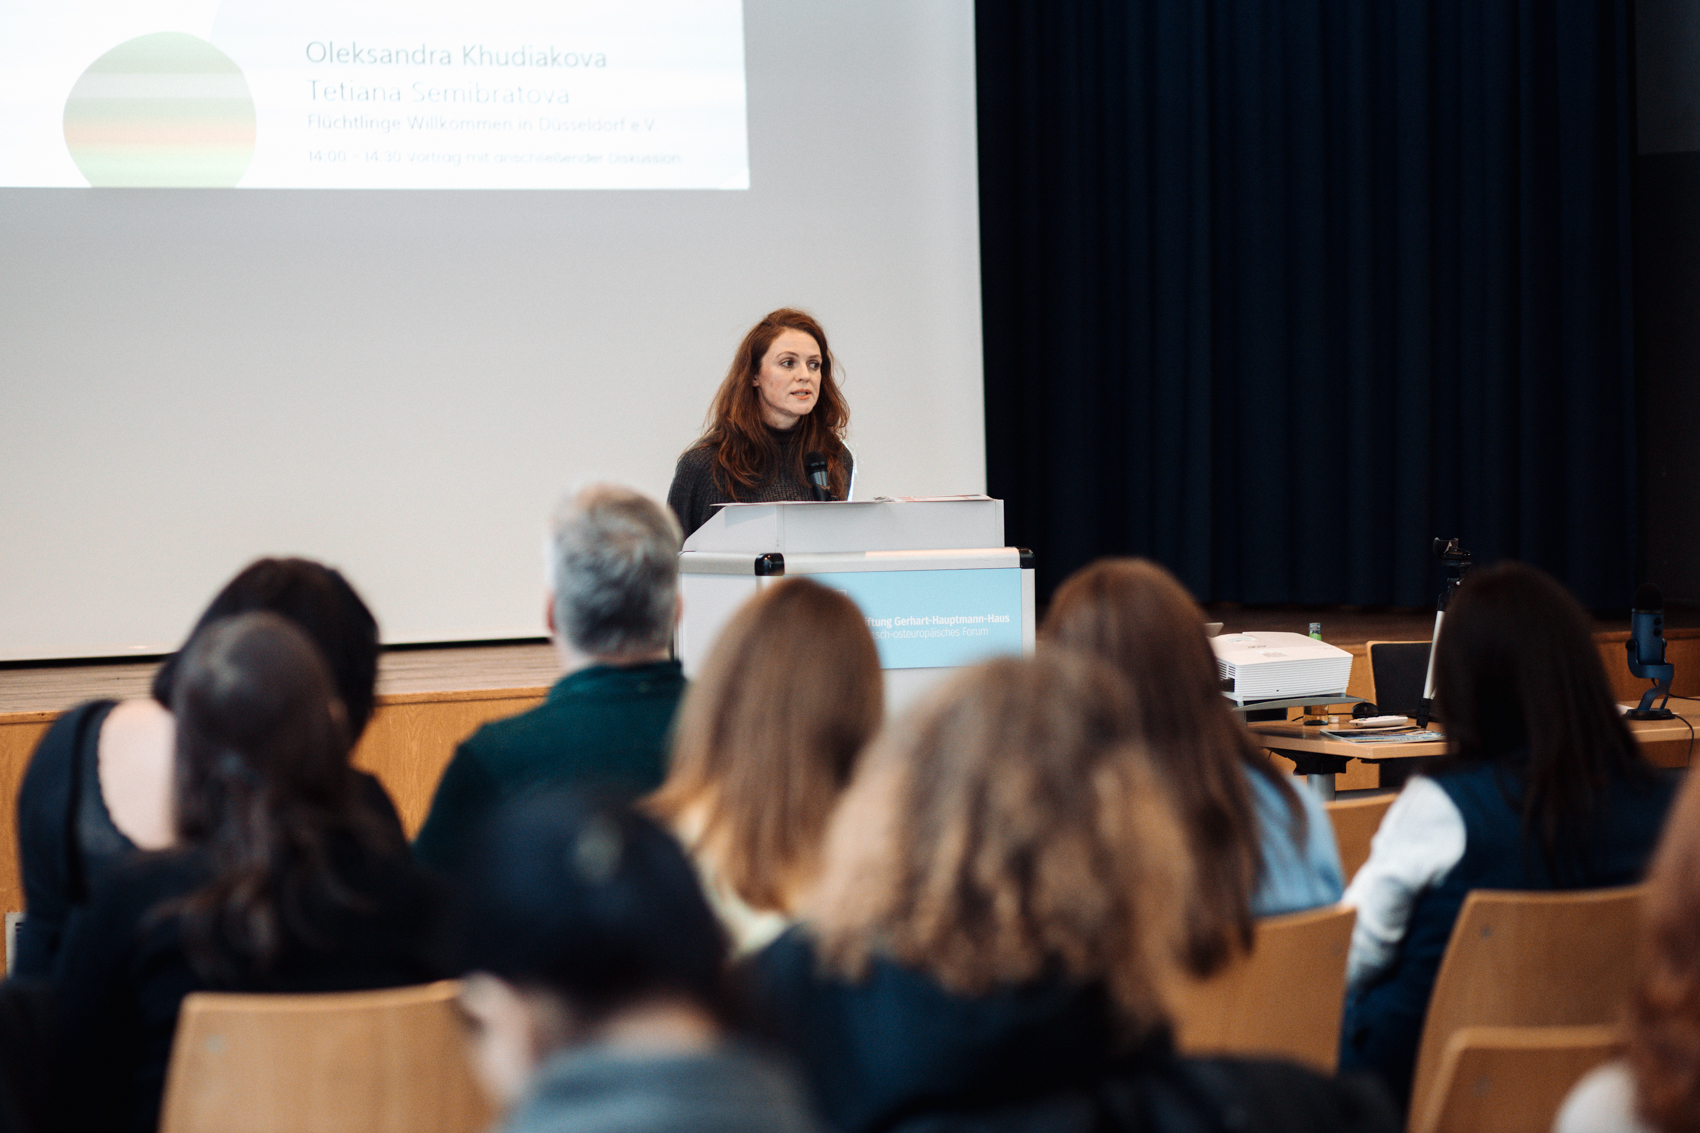 Oleksandra Khudiakova von Flüchtlinge Willkommen in Düsseldorf e.V.  hält einen Vortrag über psychologische Unterstützung für Eltern von Flüchtlingskindern.